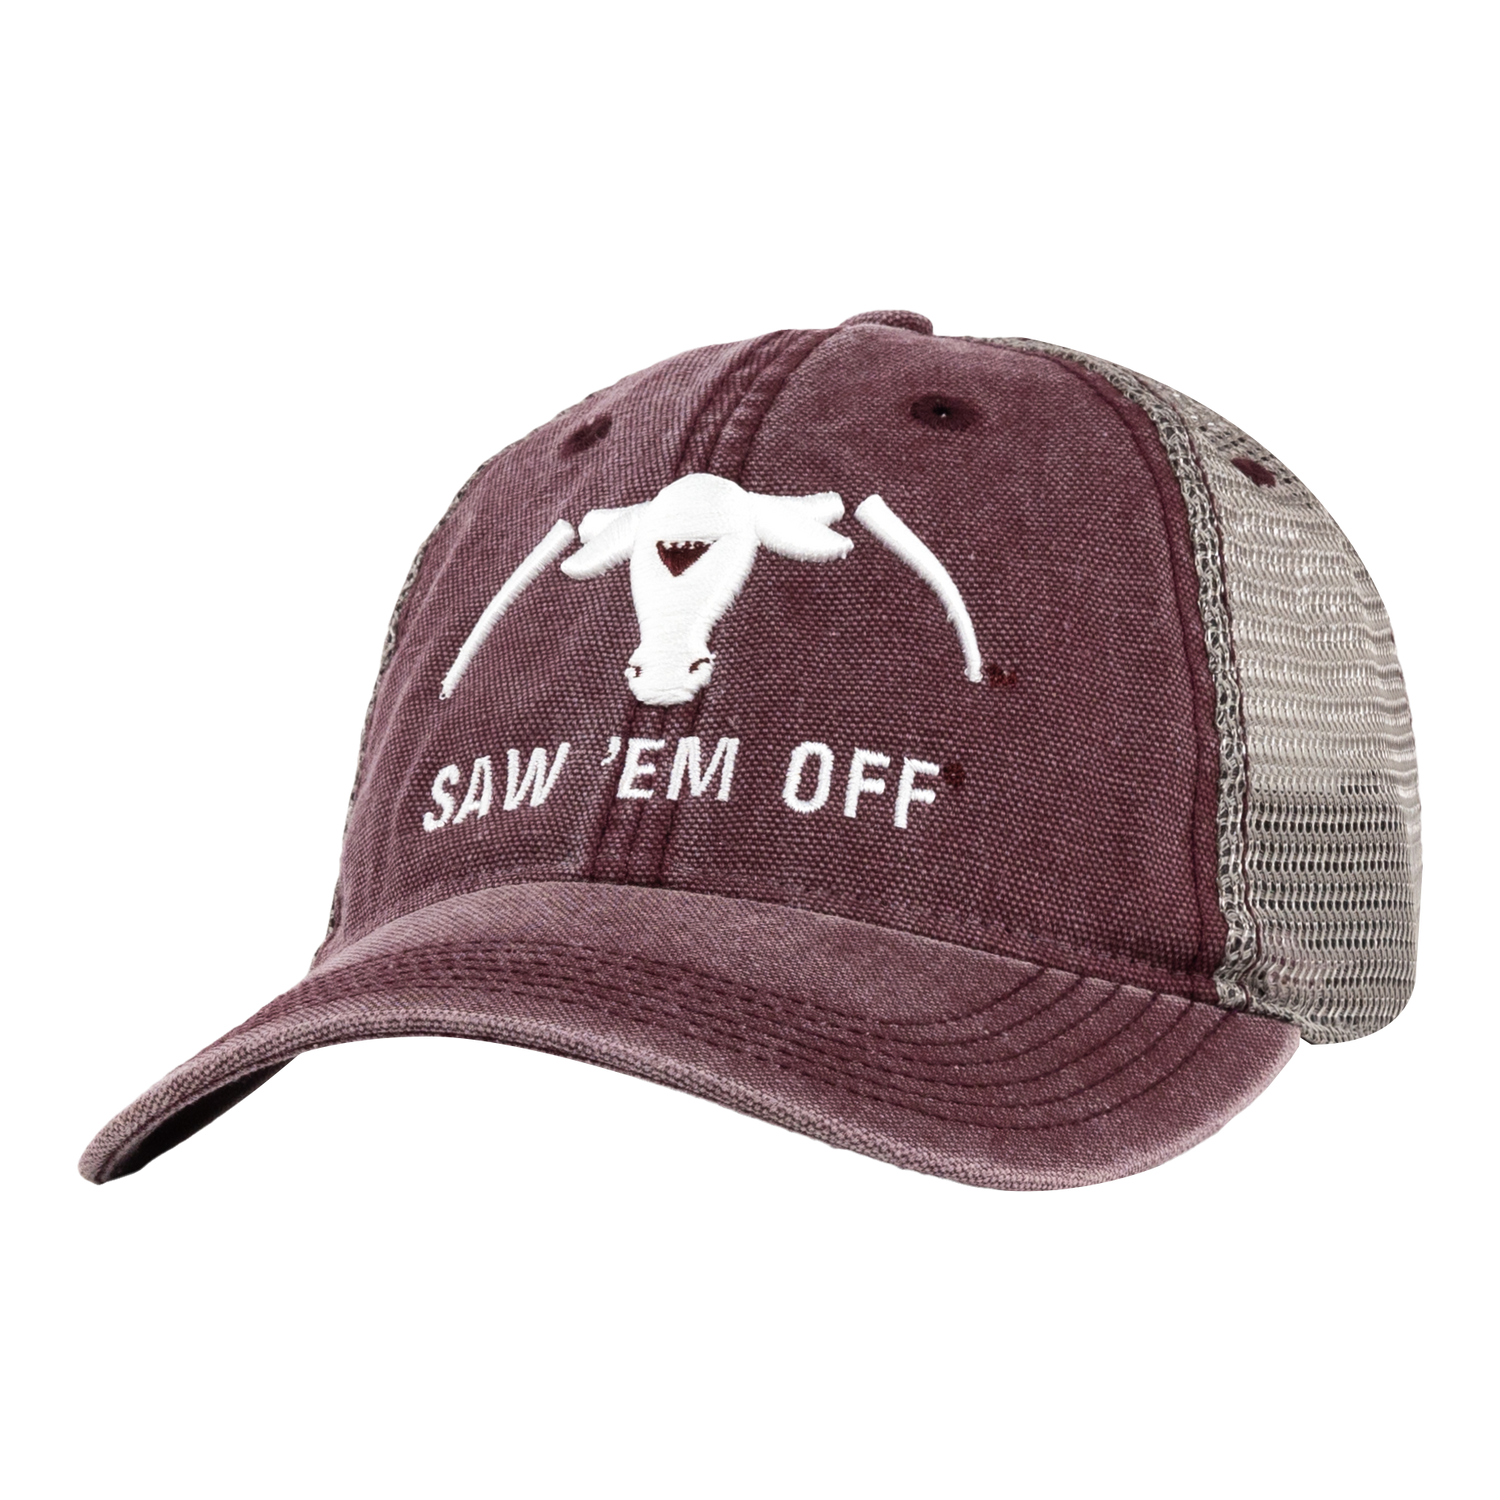 Texas A&M Saw Em Off Dashboard Hat